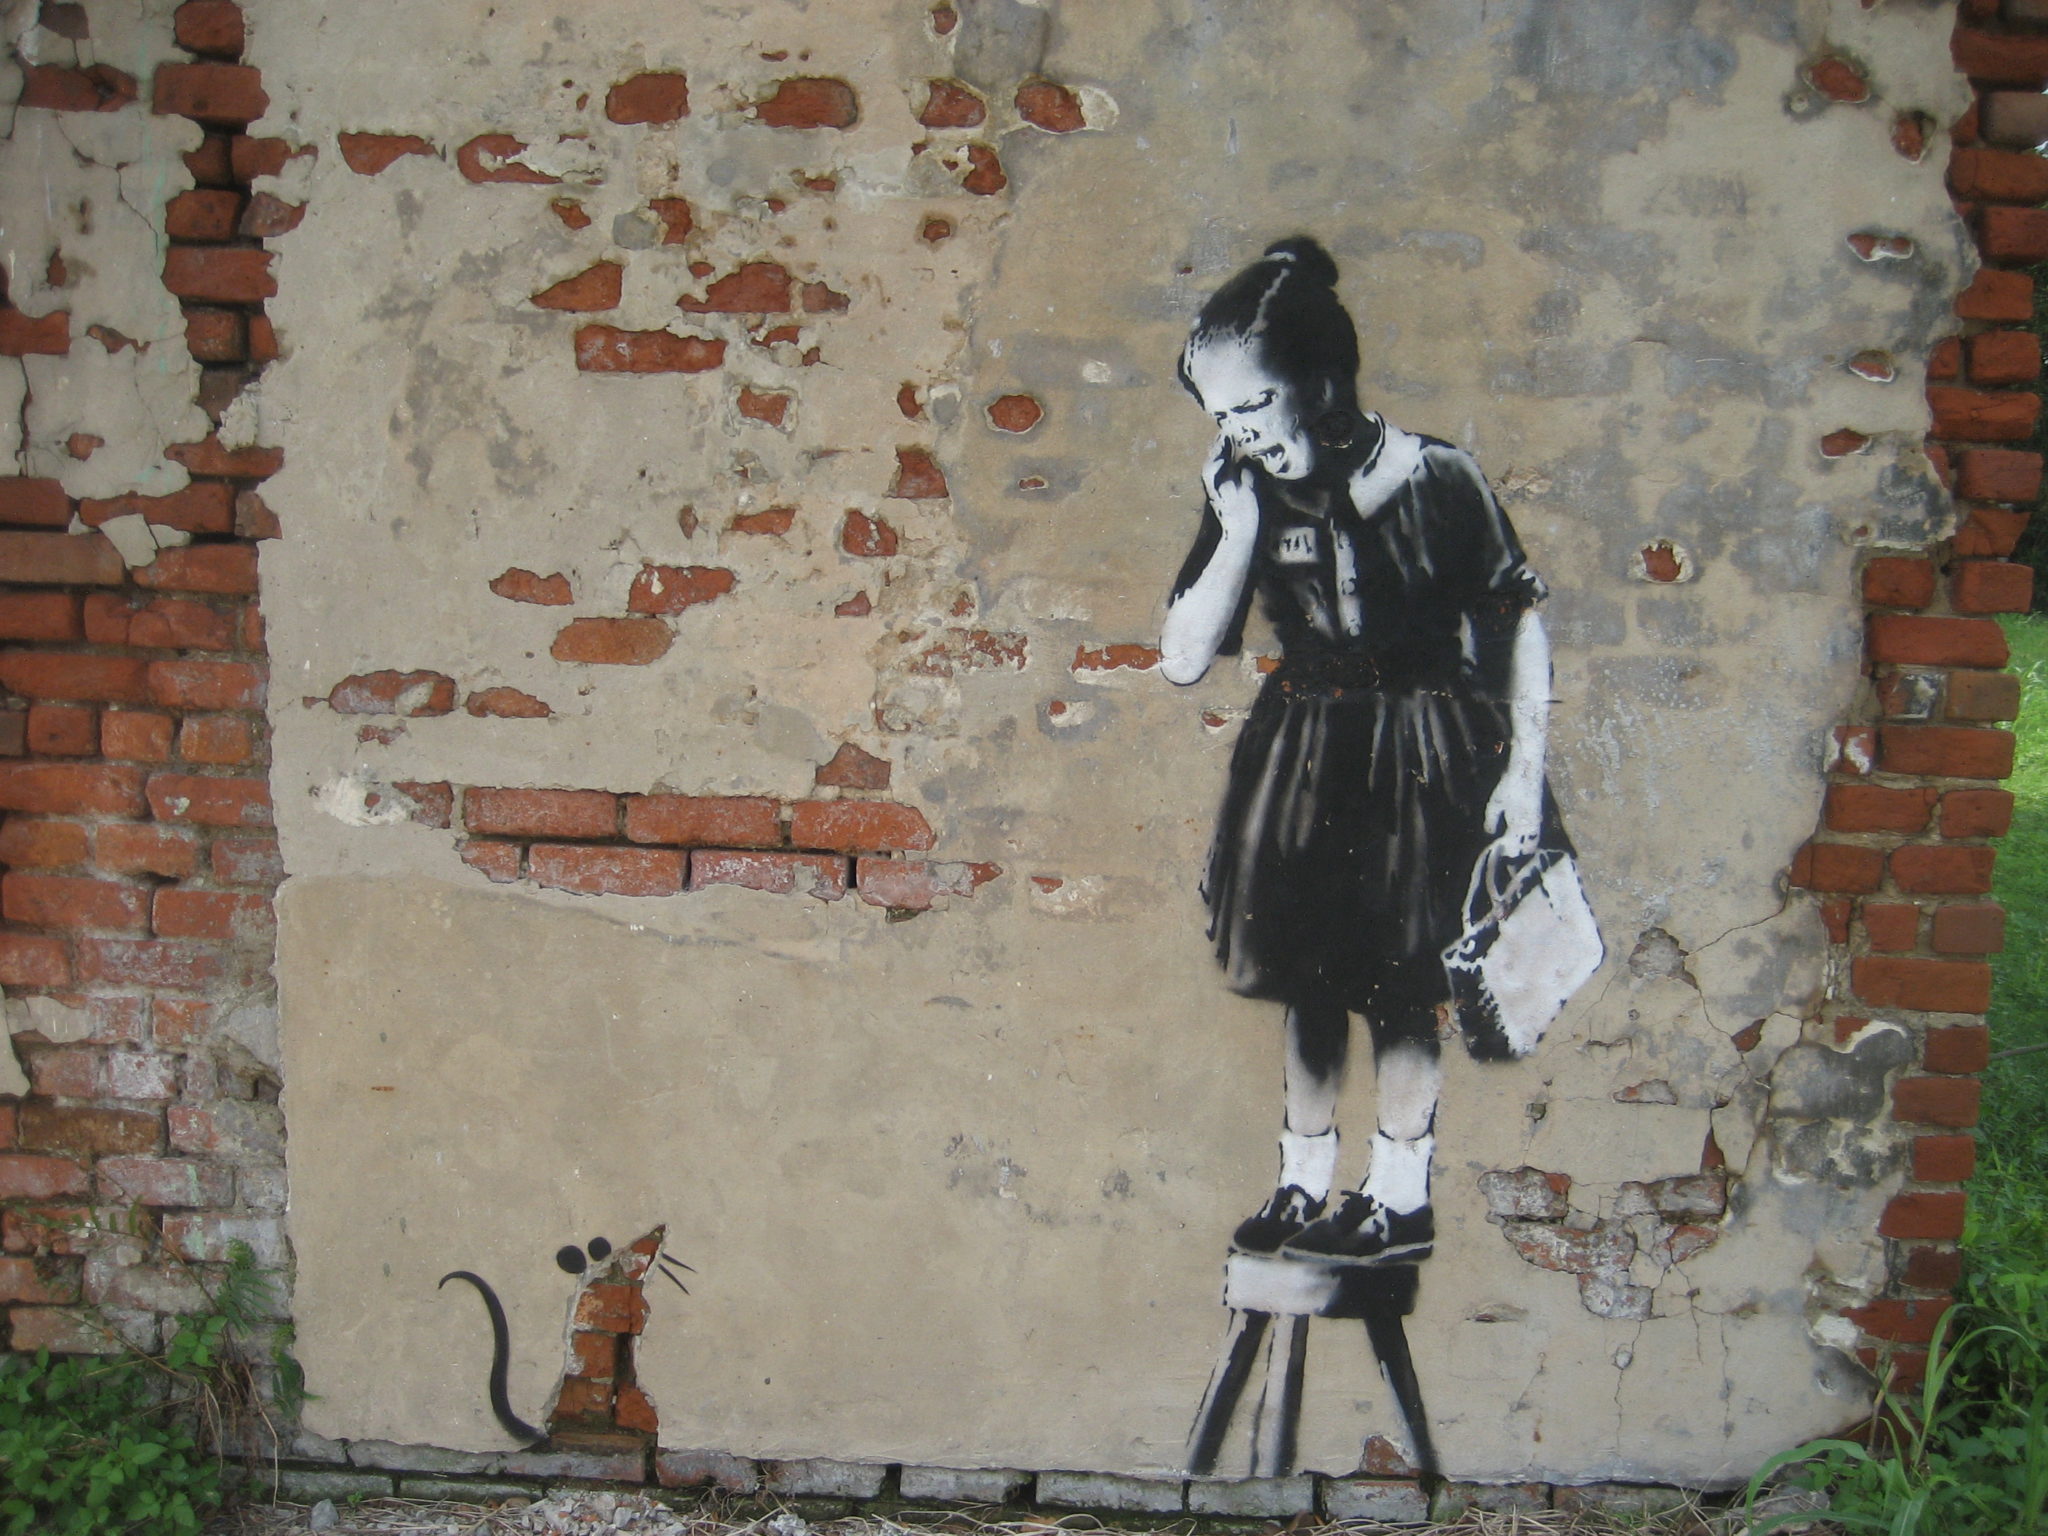 banksy ratgirl - een van zijn duurste kunstwerken